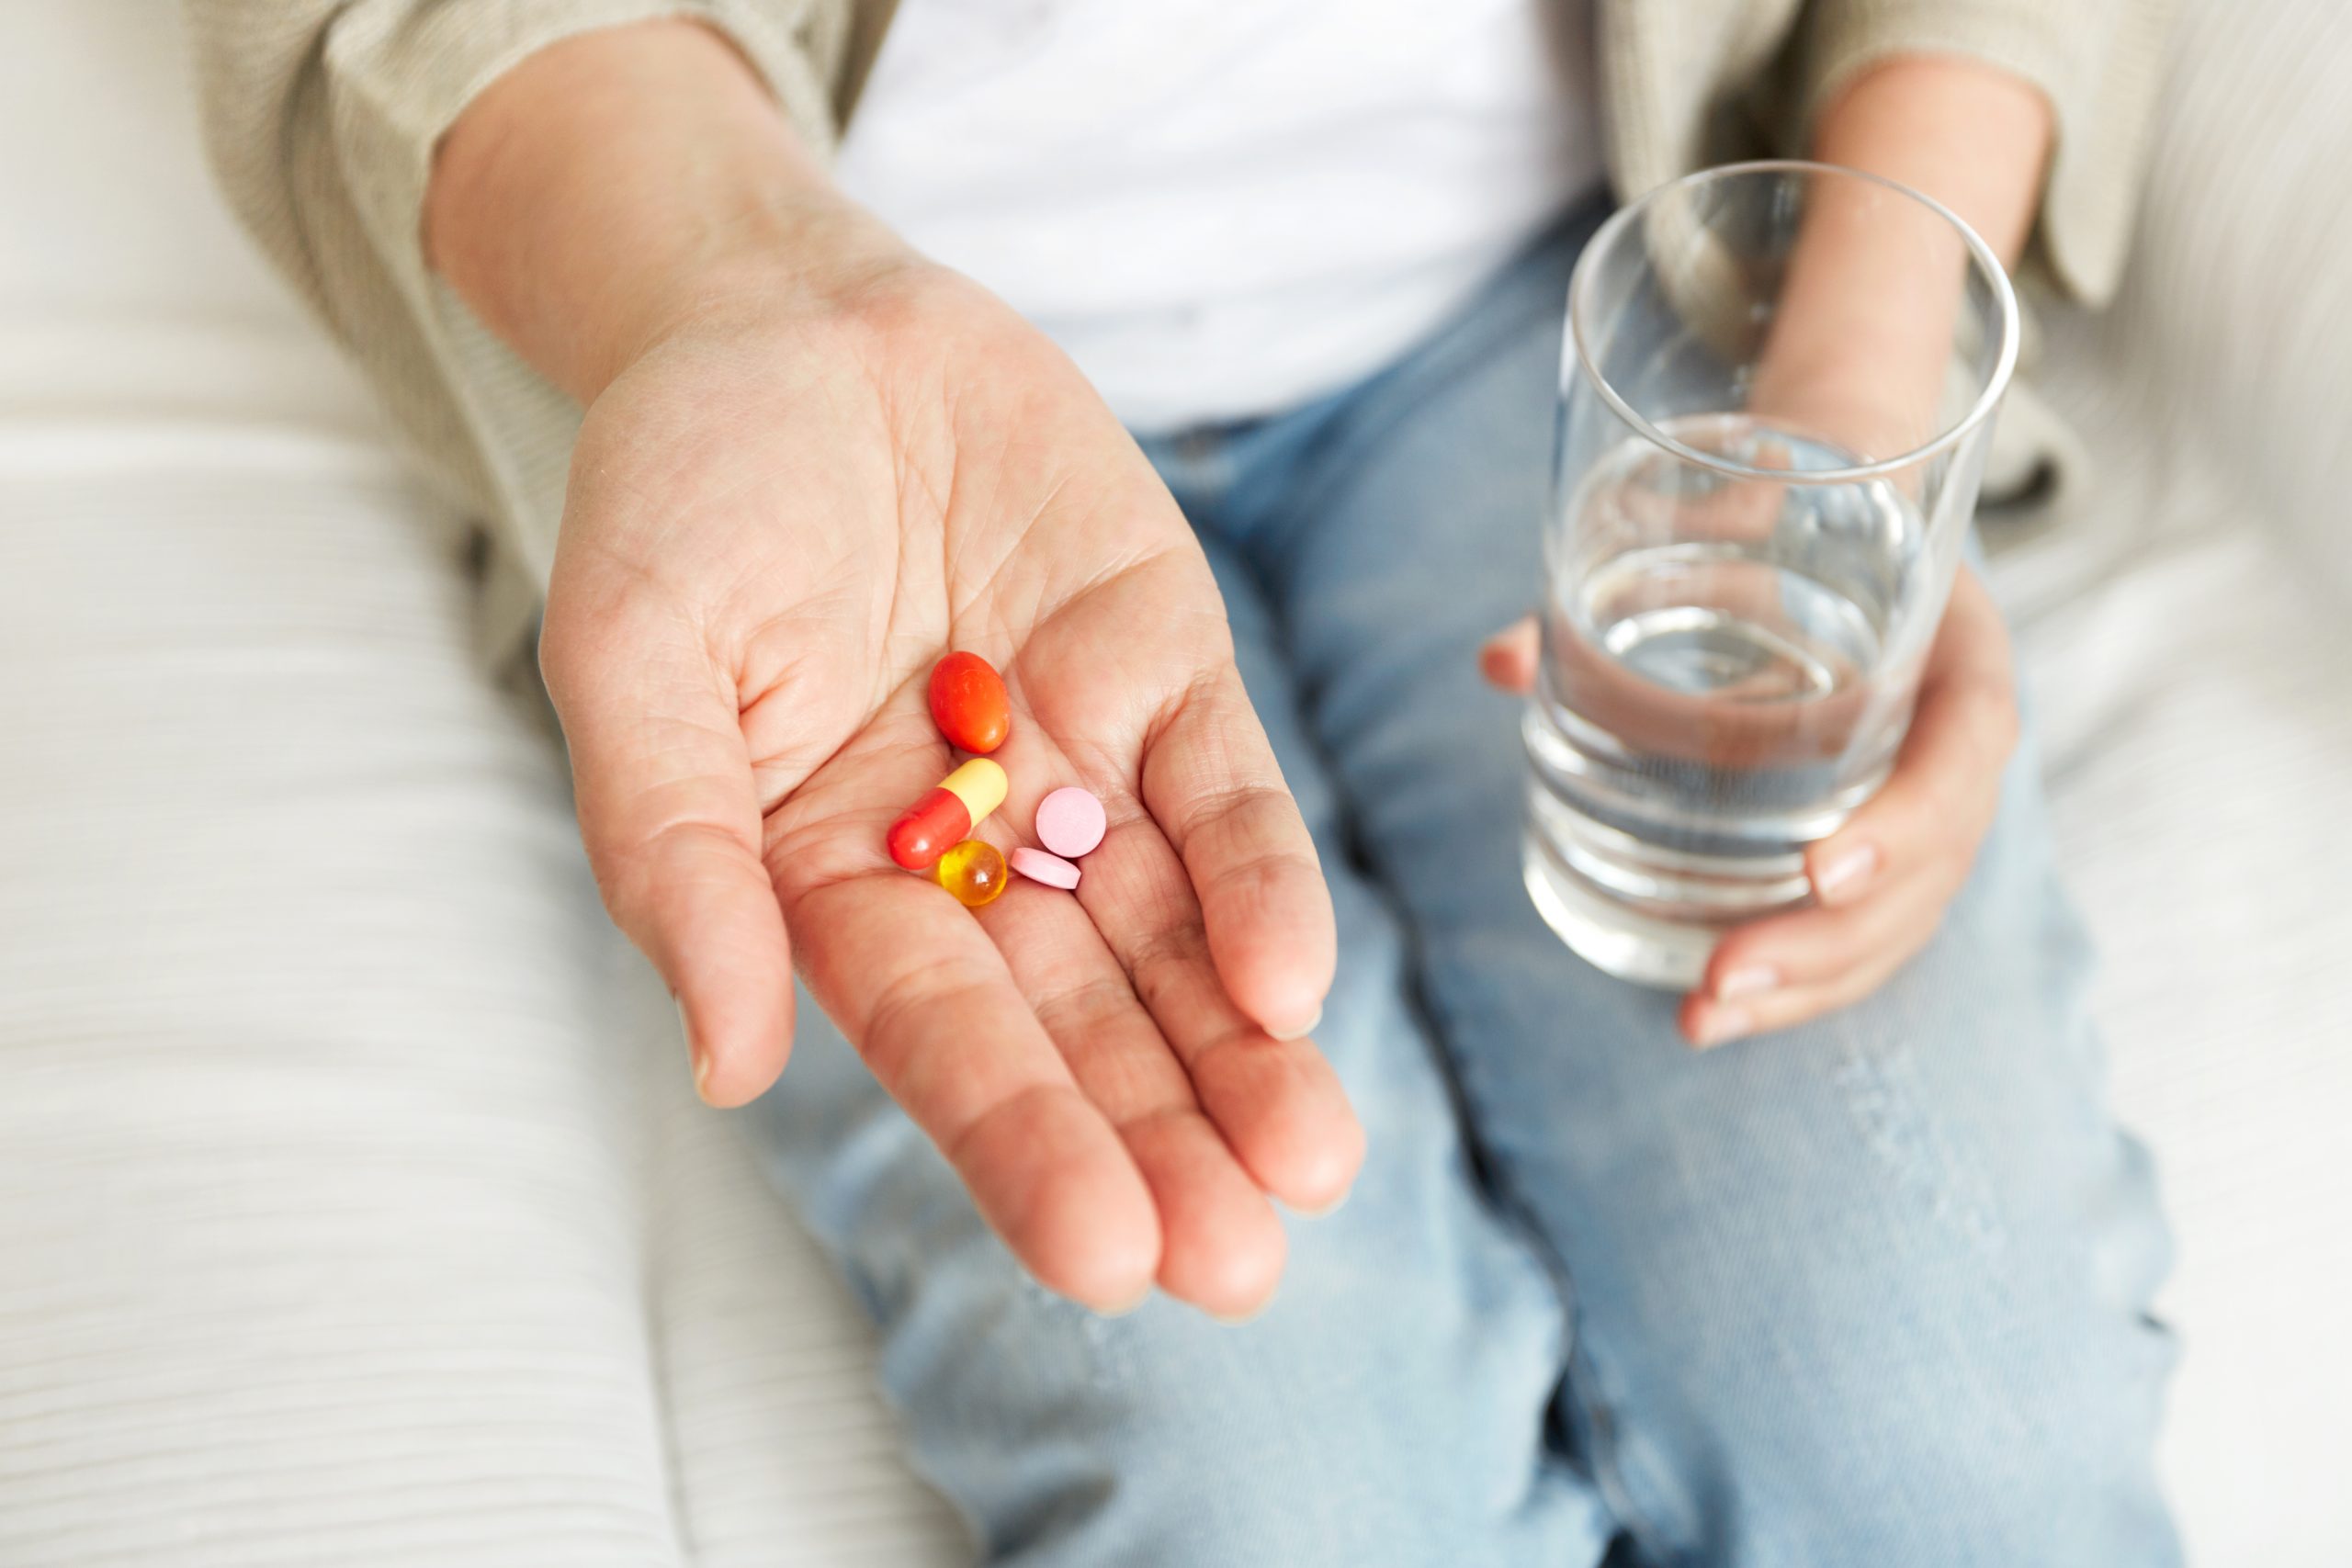 Las mujeres tienen mayor riesgo de sufrir reacciones adversas a los medicamentos